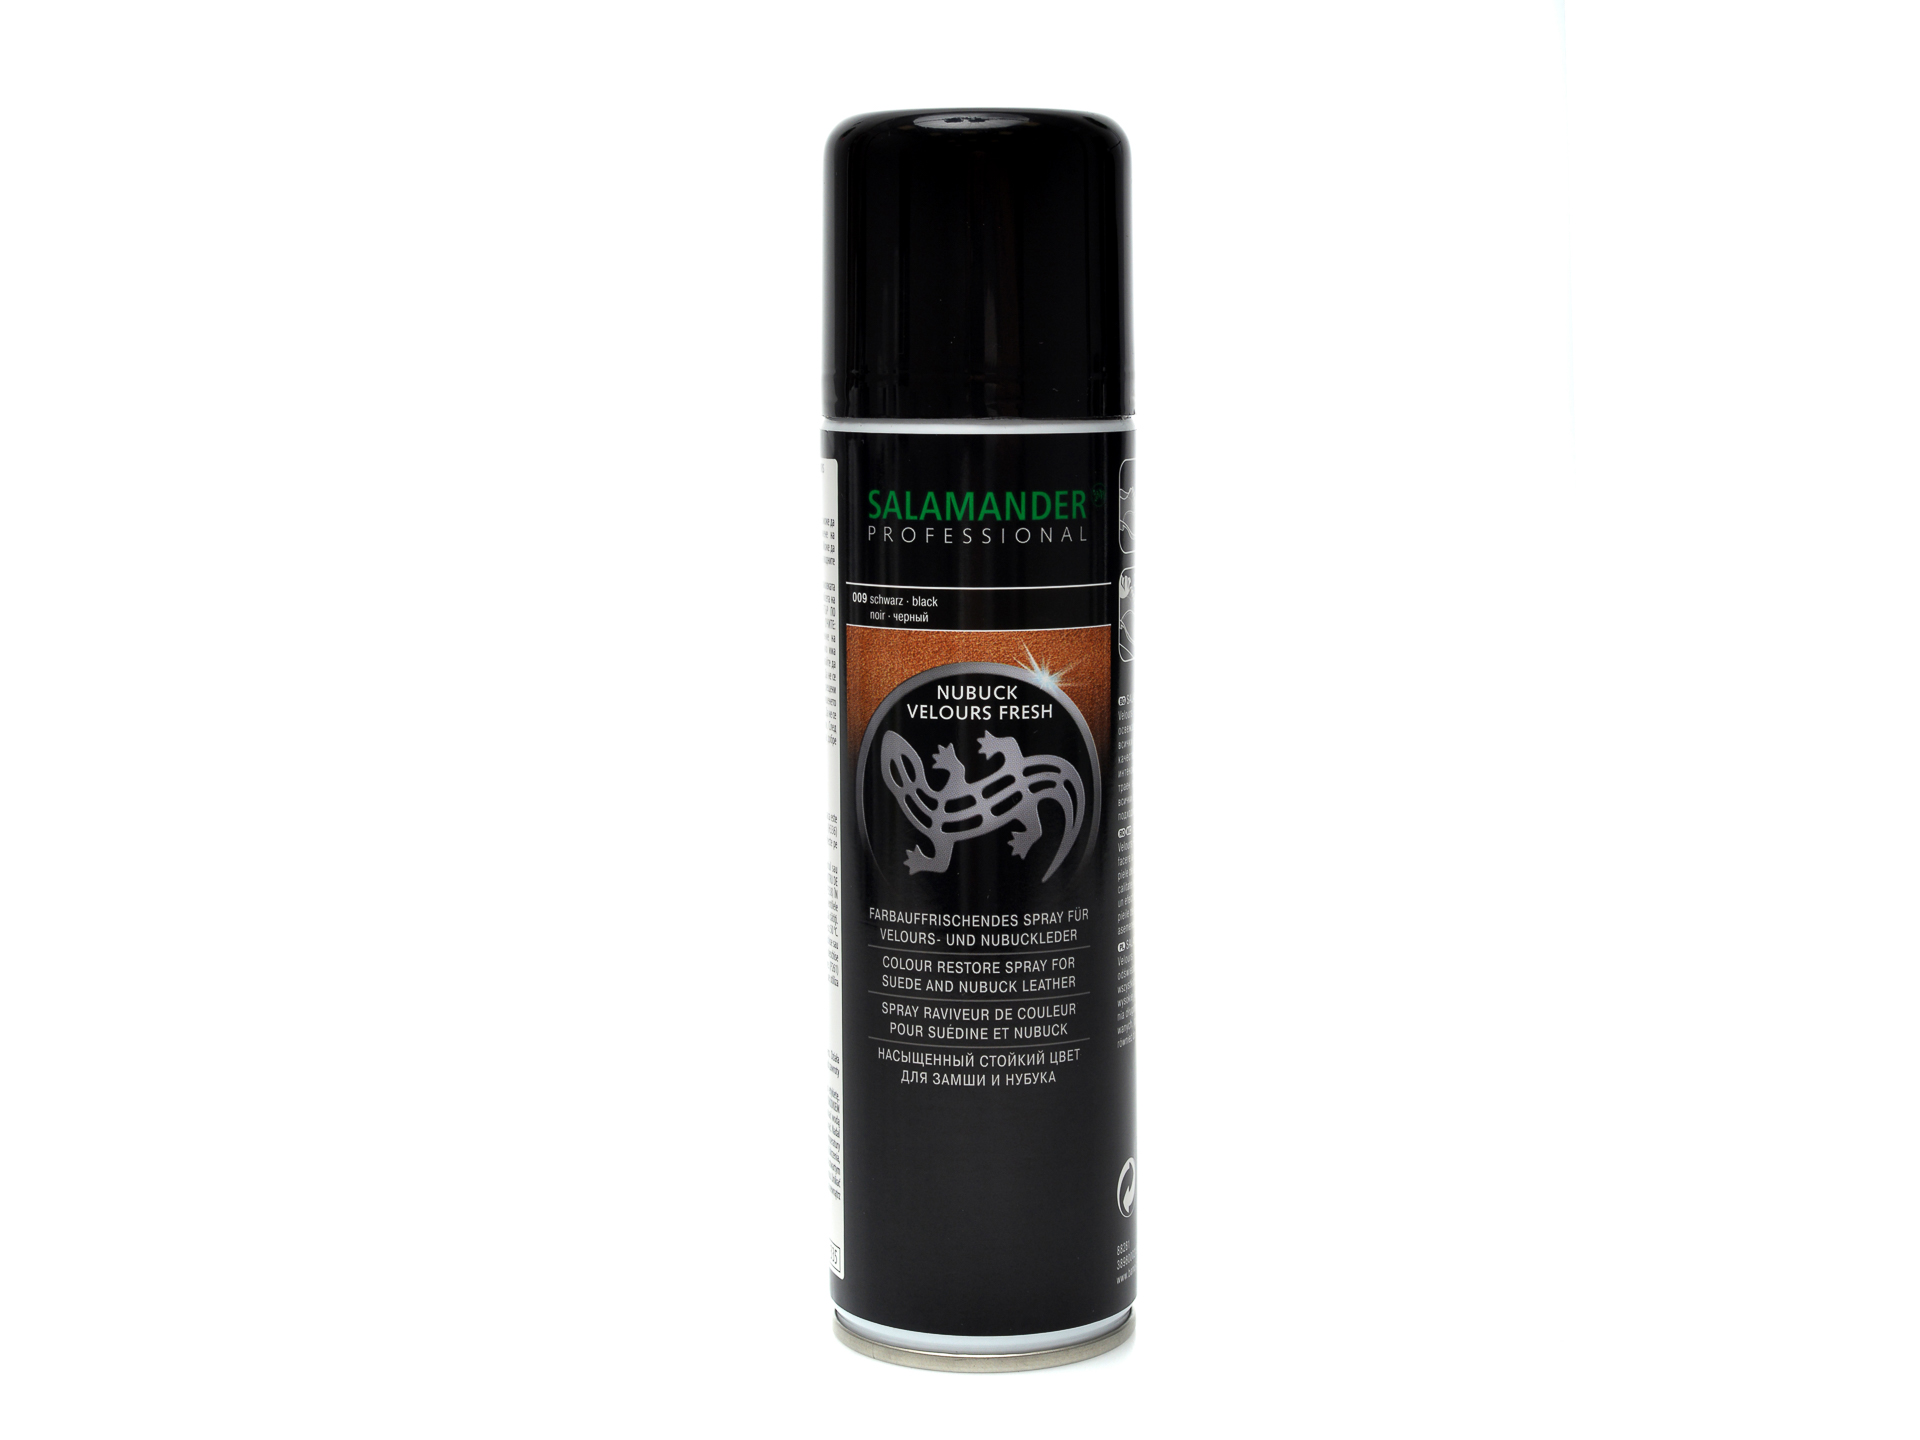 PR Spray de culoare neagra, Salamander Salamander Professional imagine reduceri